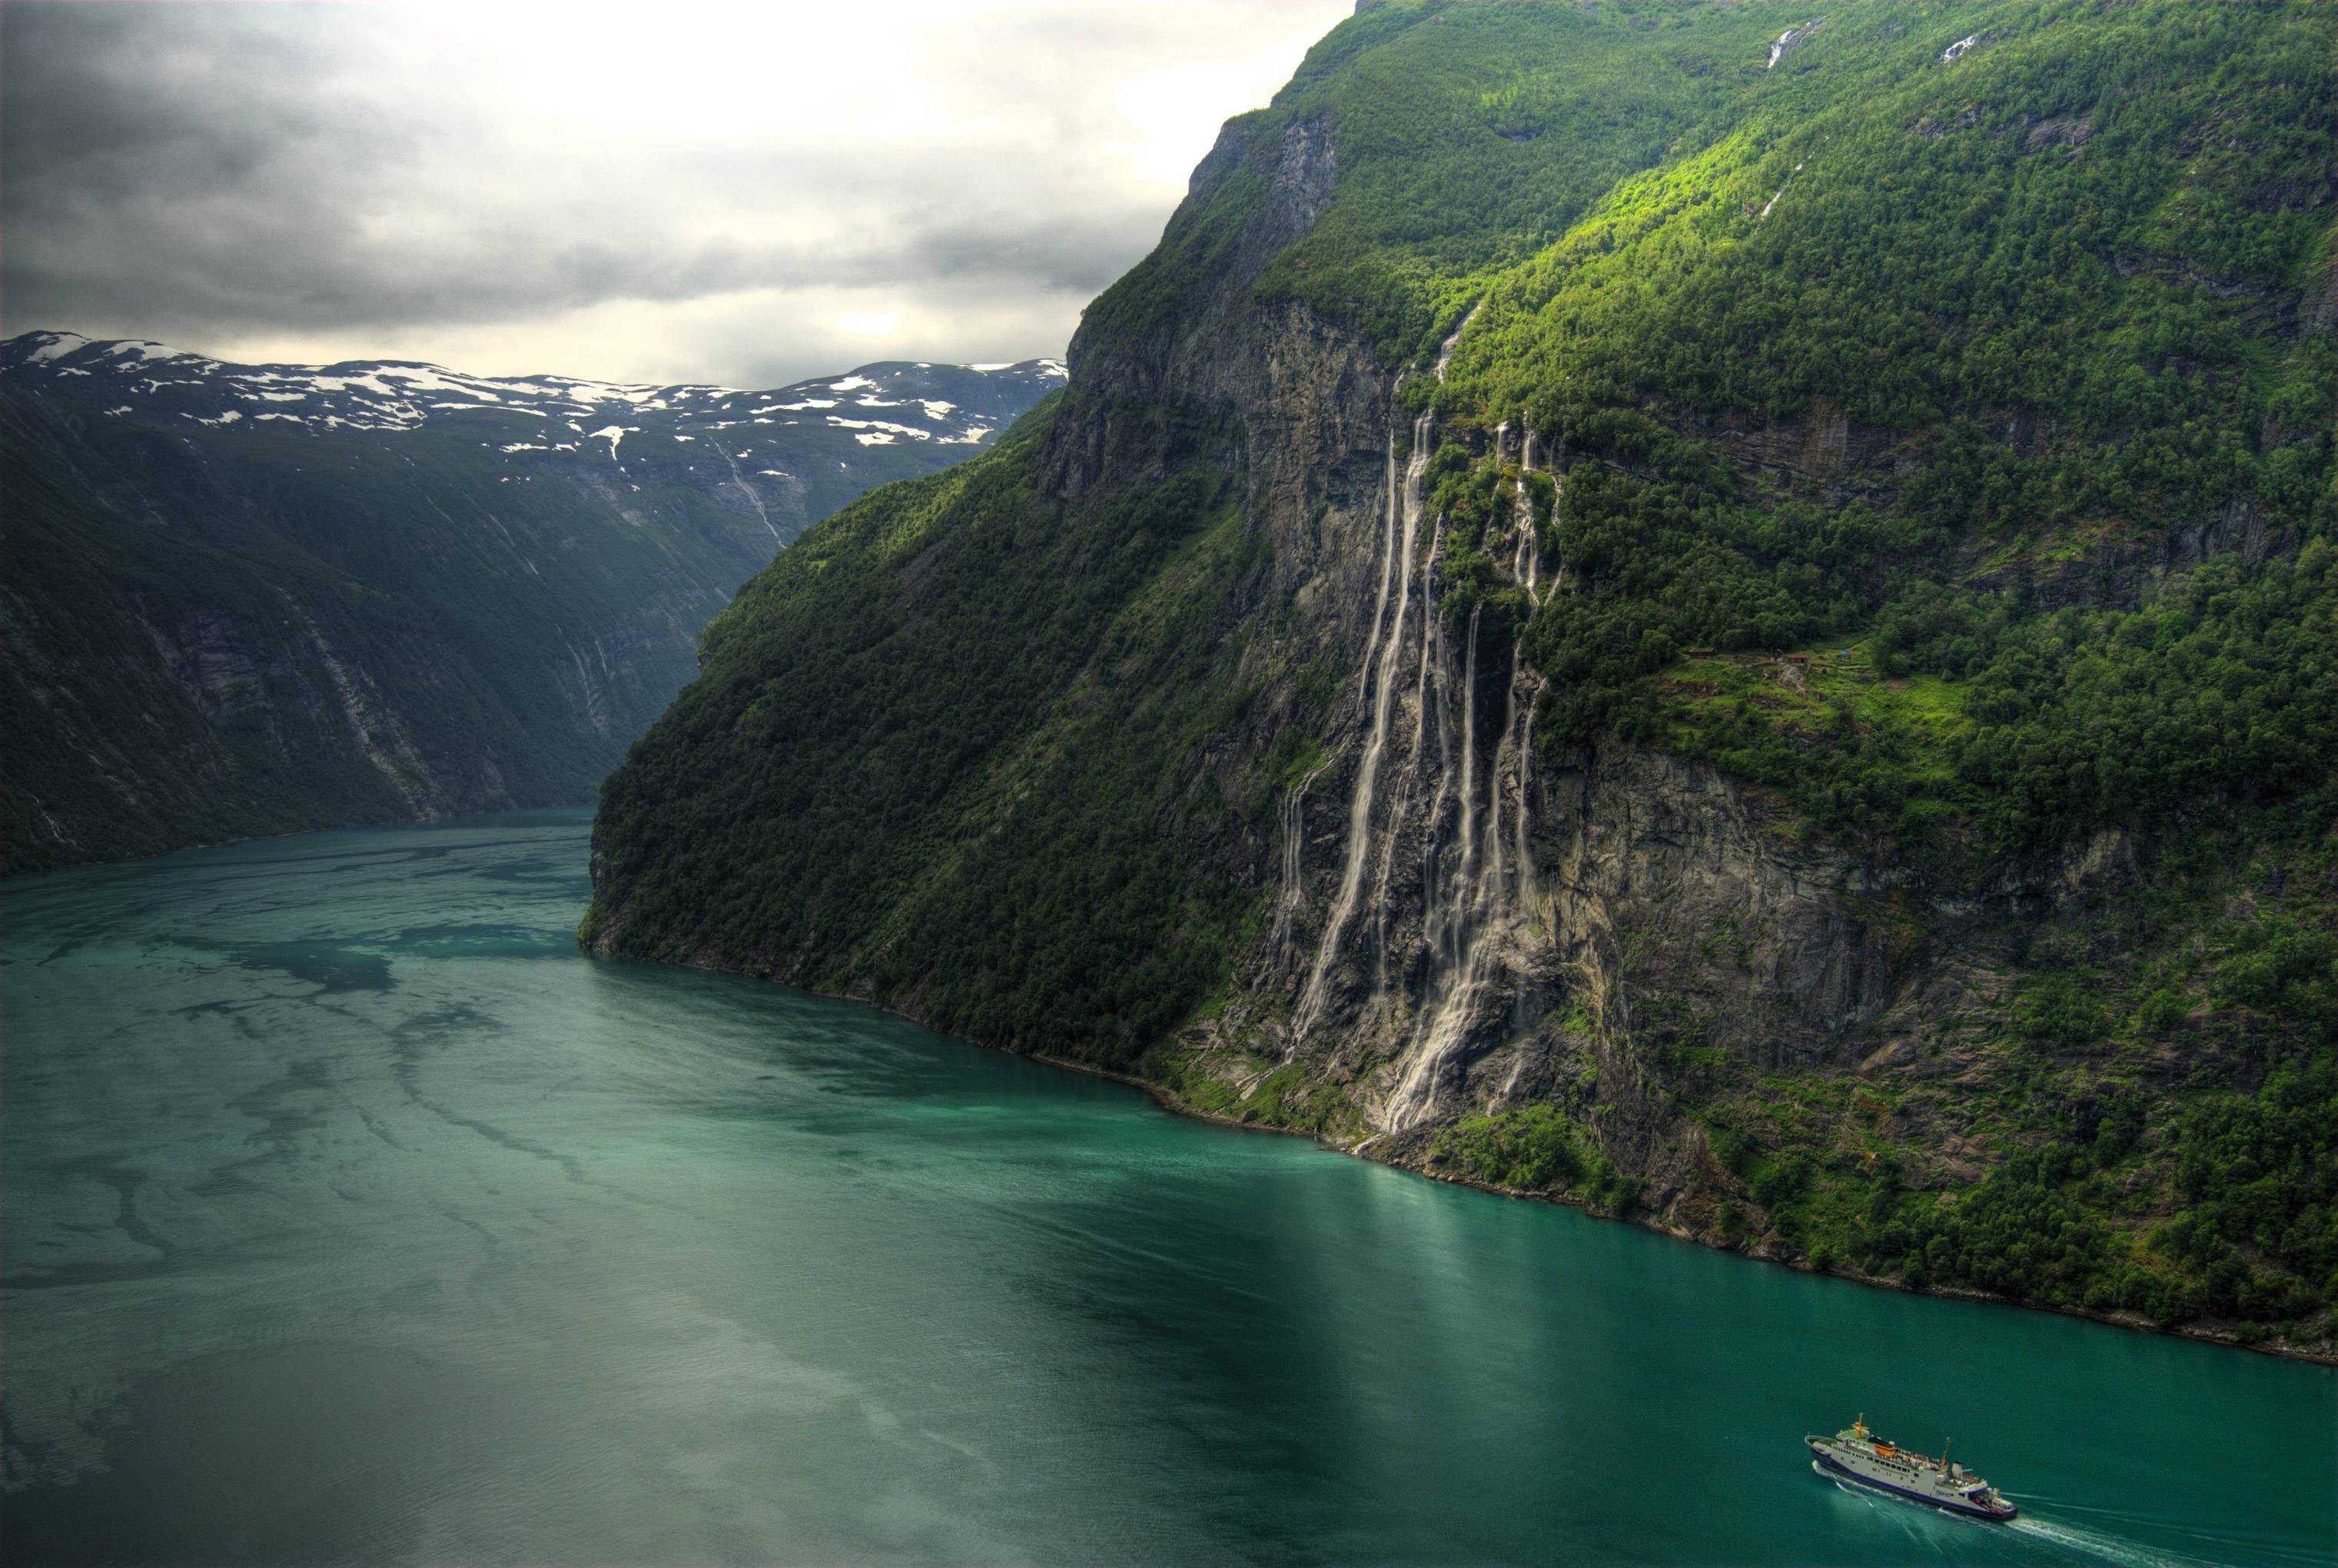 Популярные заставки и фоны Водопад Семь Сестер Норвегия на компьютер